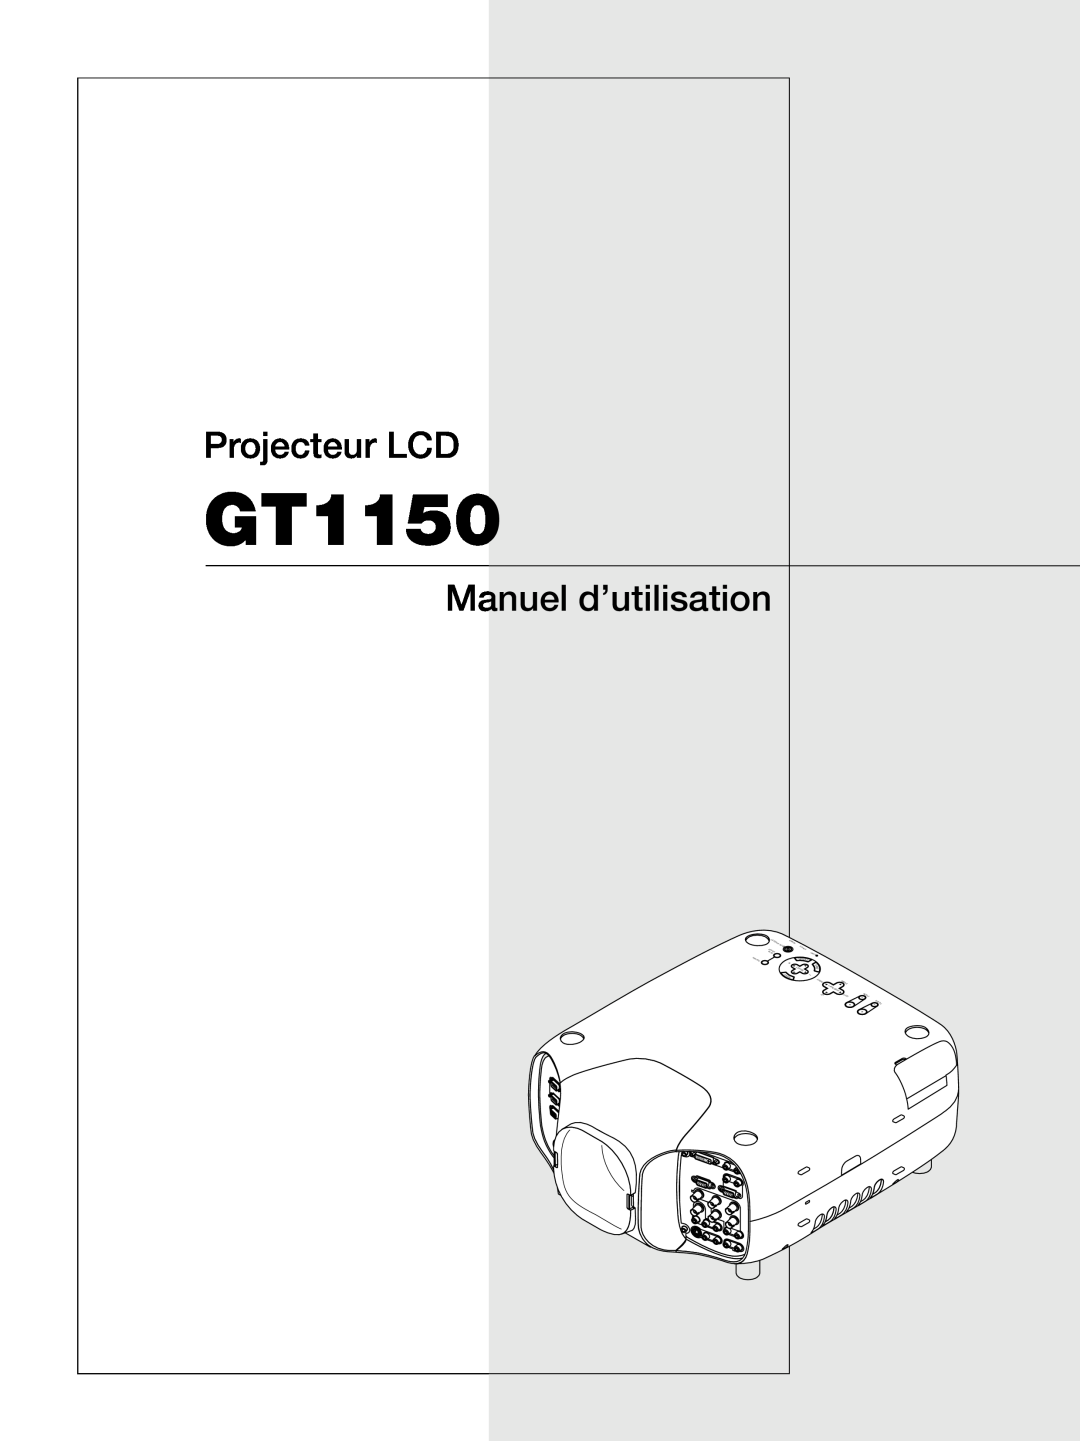 NEC GT1150 manuel dutilisation Projecteur LCD, Manuel d’utilisation 